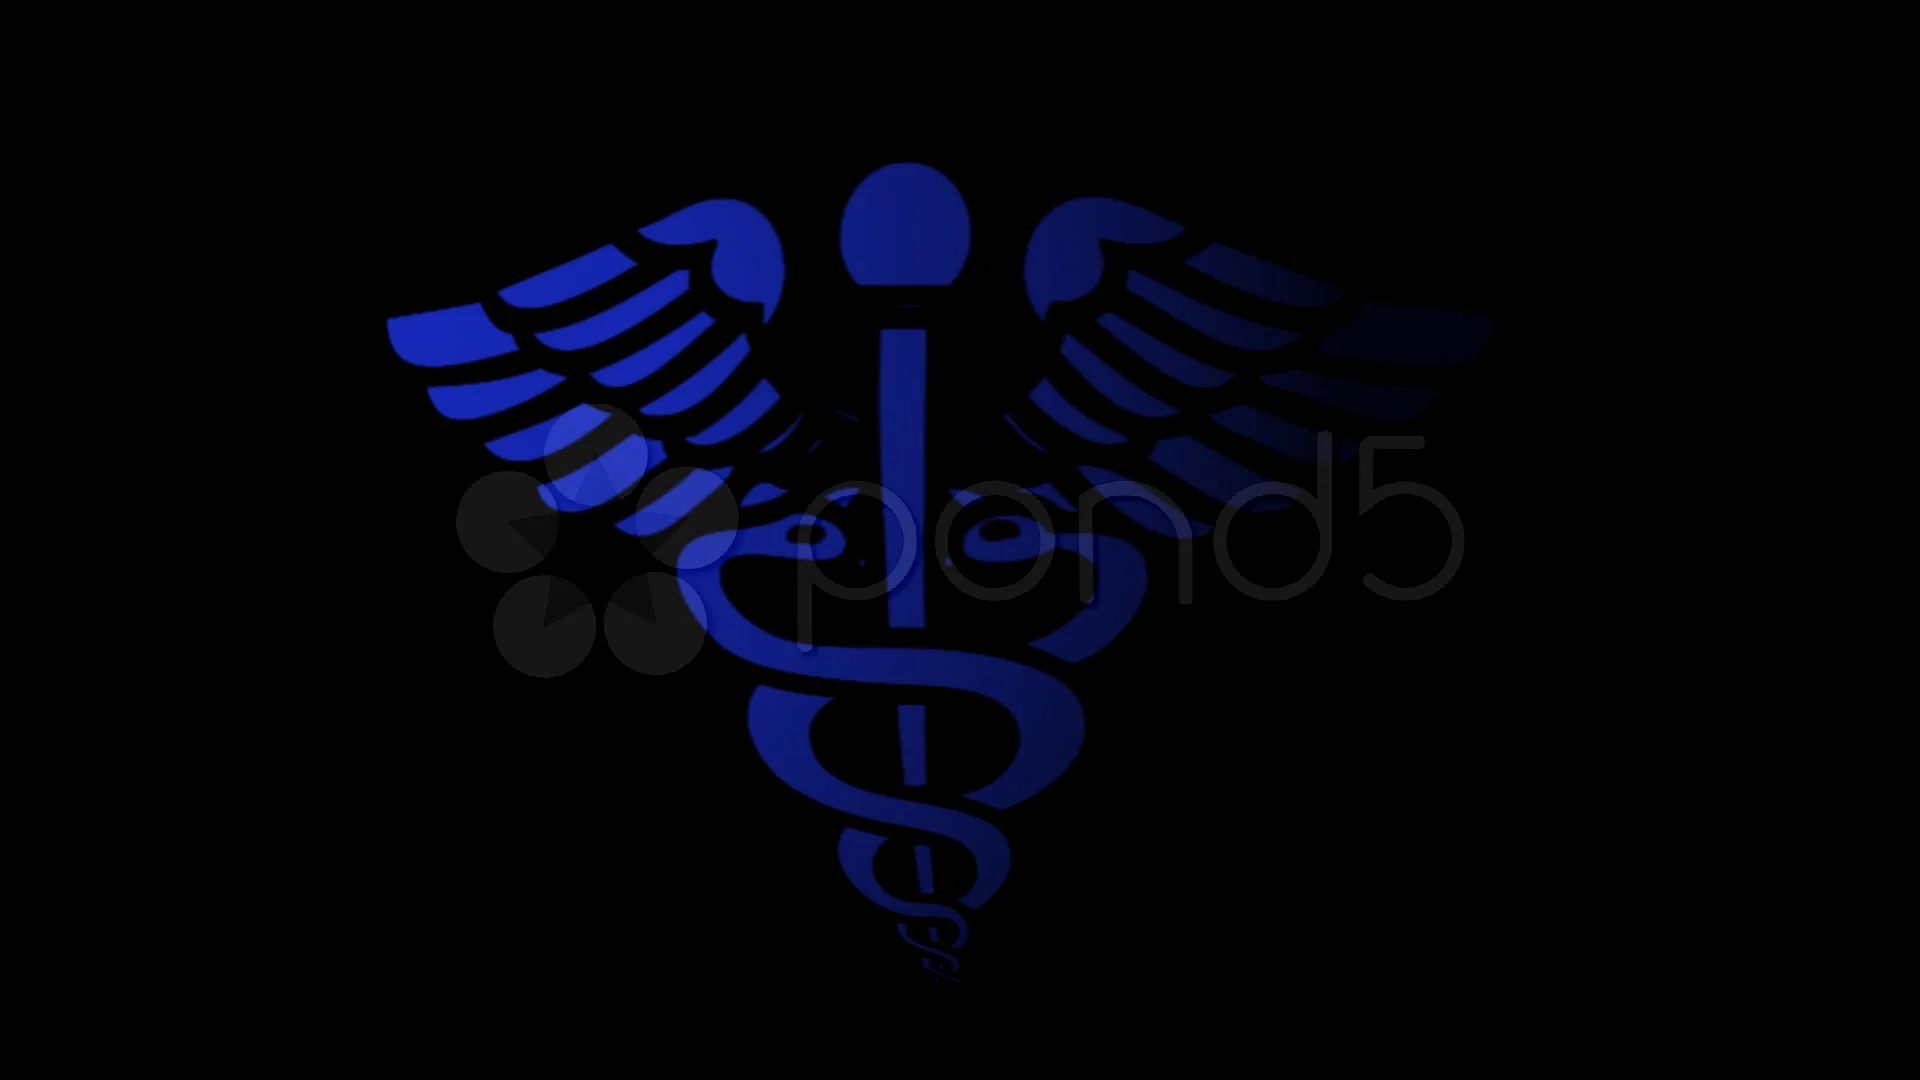 caduceus medical symbol wallpaper